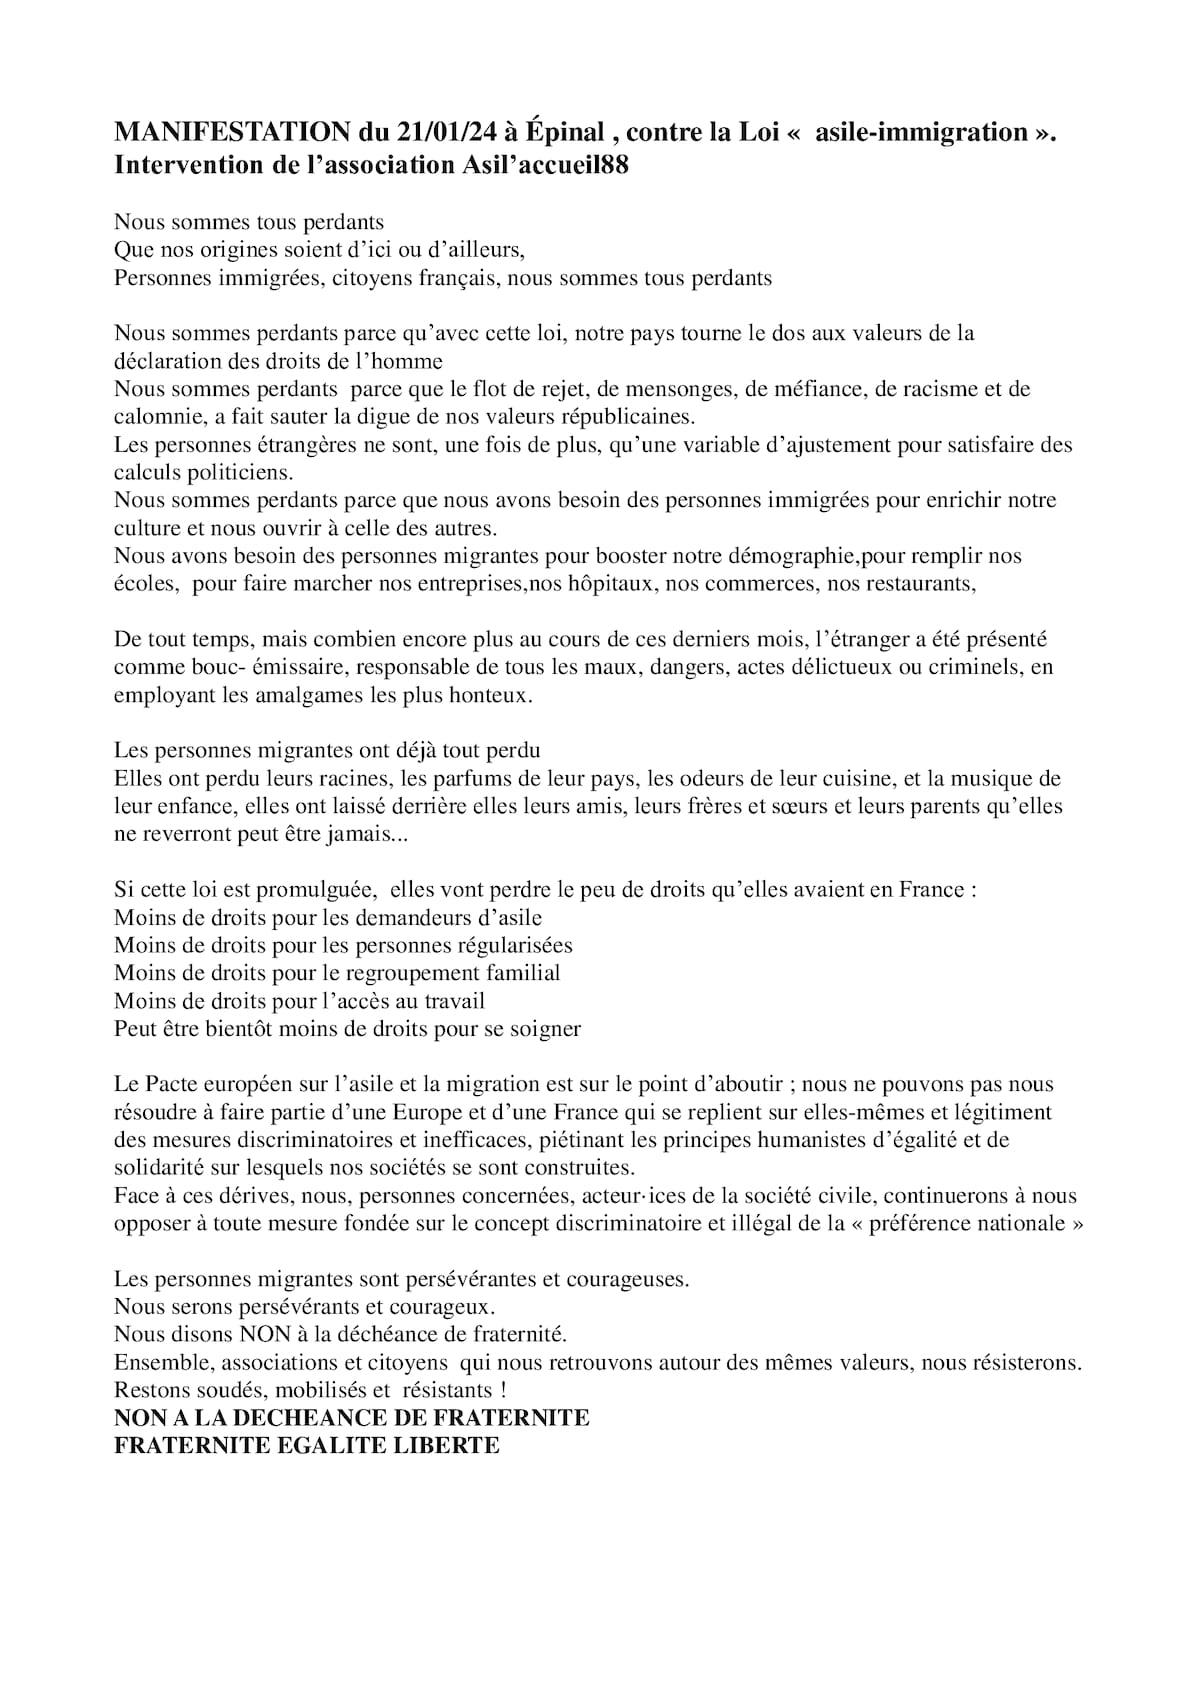 Discours Asil Accueil 88 Manifestation Epinal 21/01/24 contre la loi 